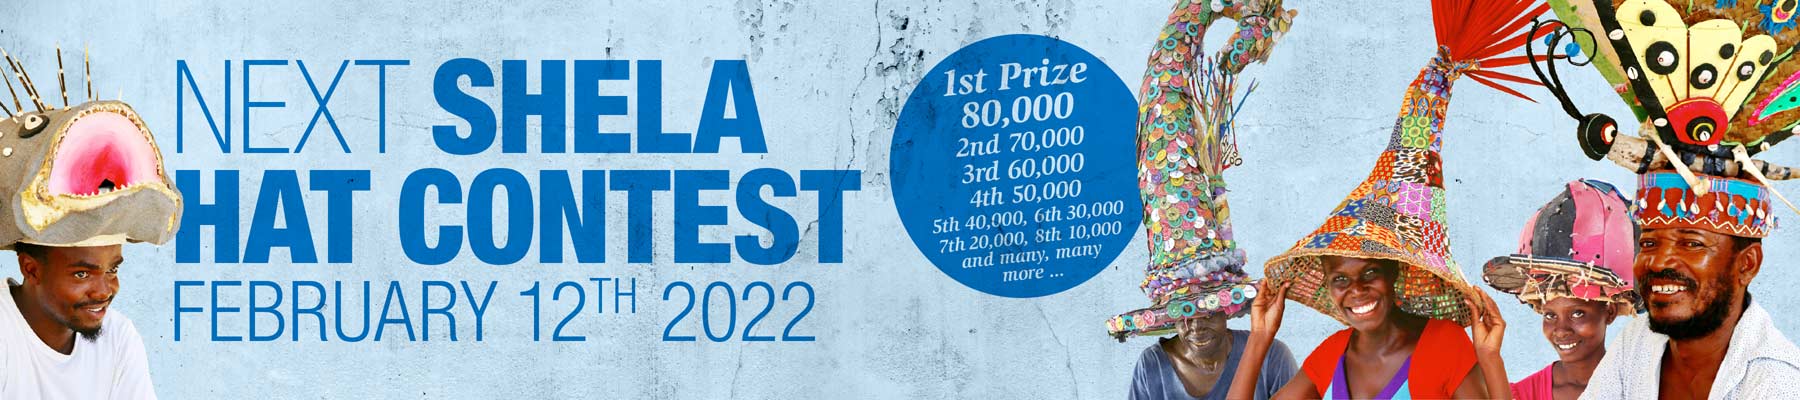 Shela Hat Contest 2022